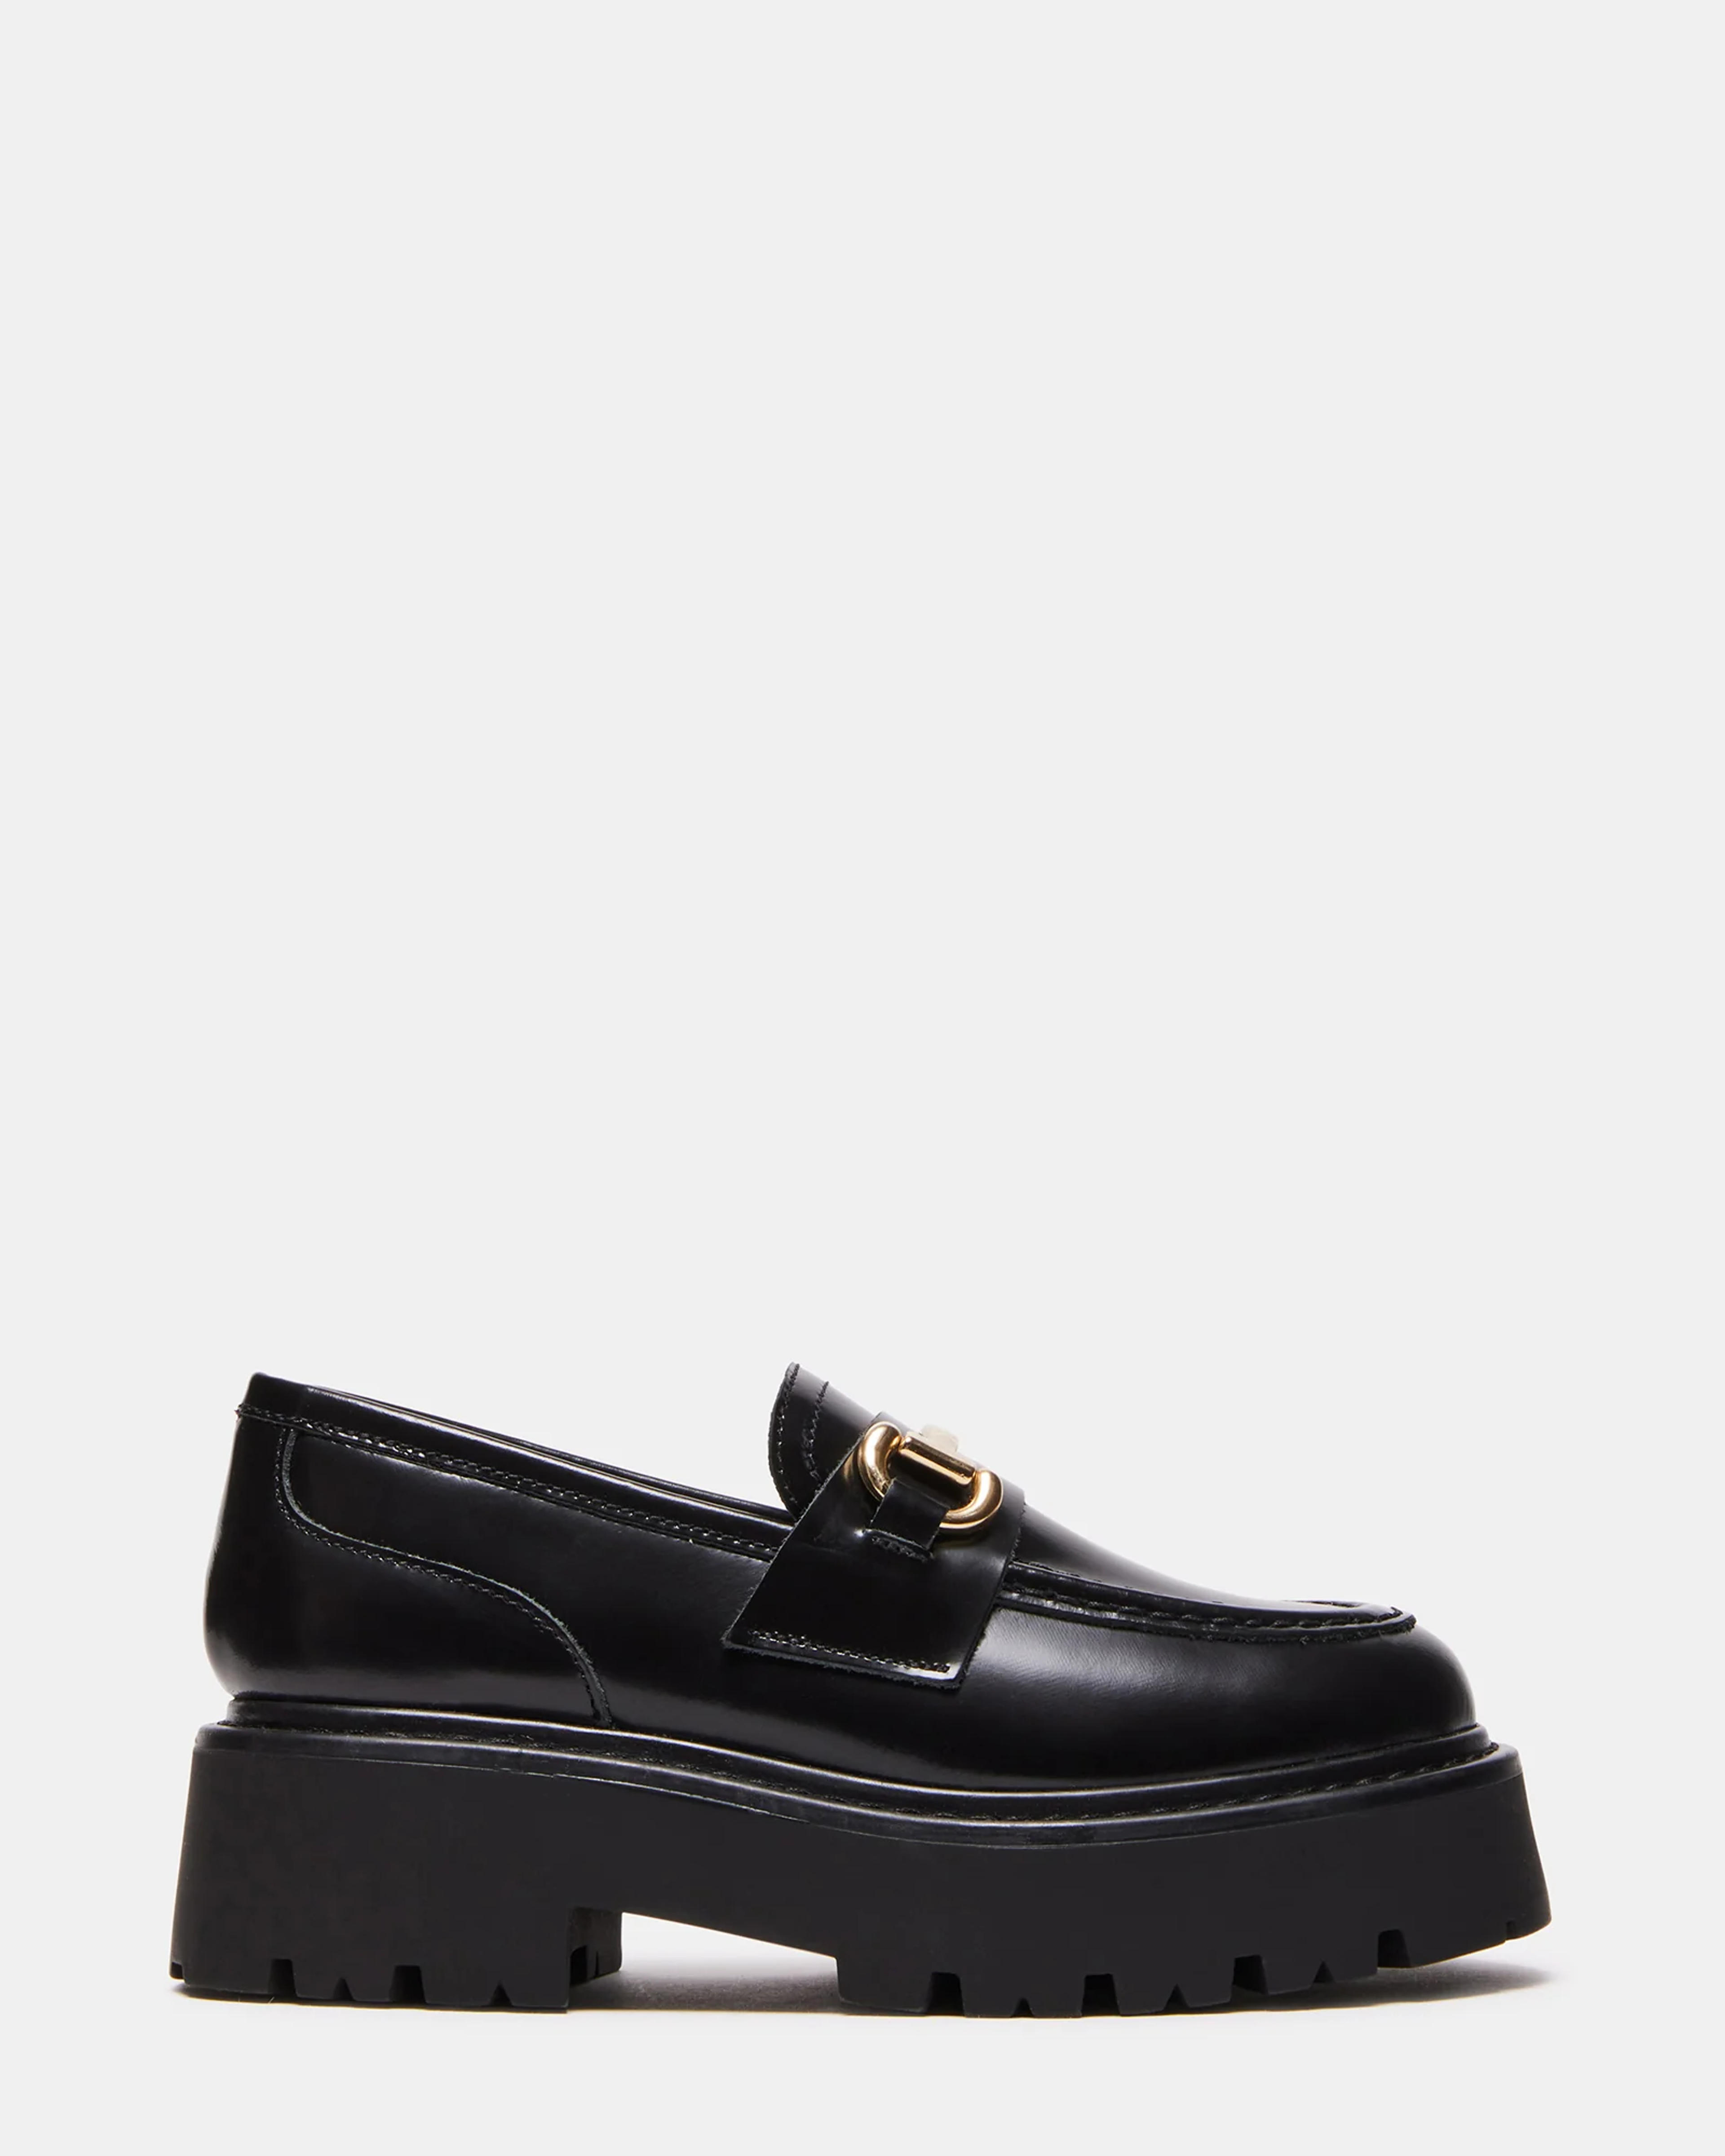 ROUX Black Leather Platform Lug Sole Loafer | Women's Loafers – Steve Madden